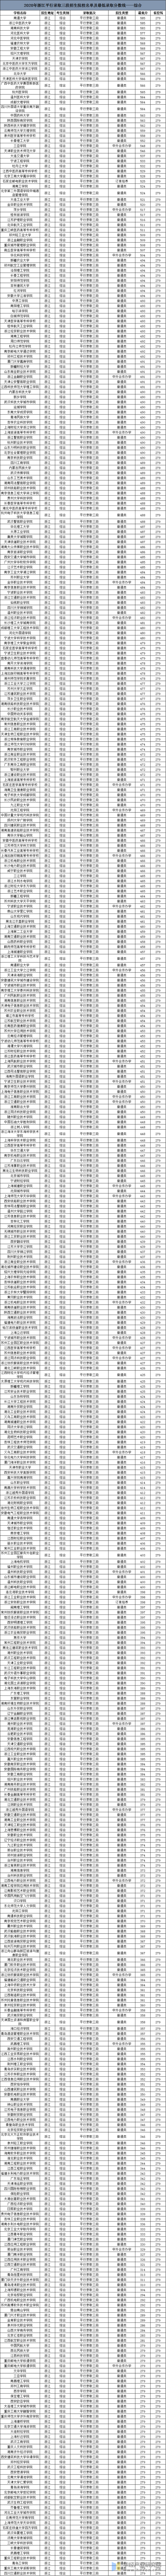 2020年浙江高考平行录取三段招生院校名单及最低录取分数线——综合